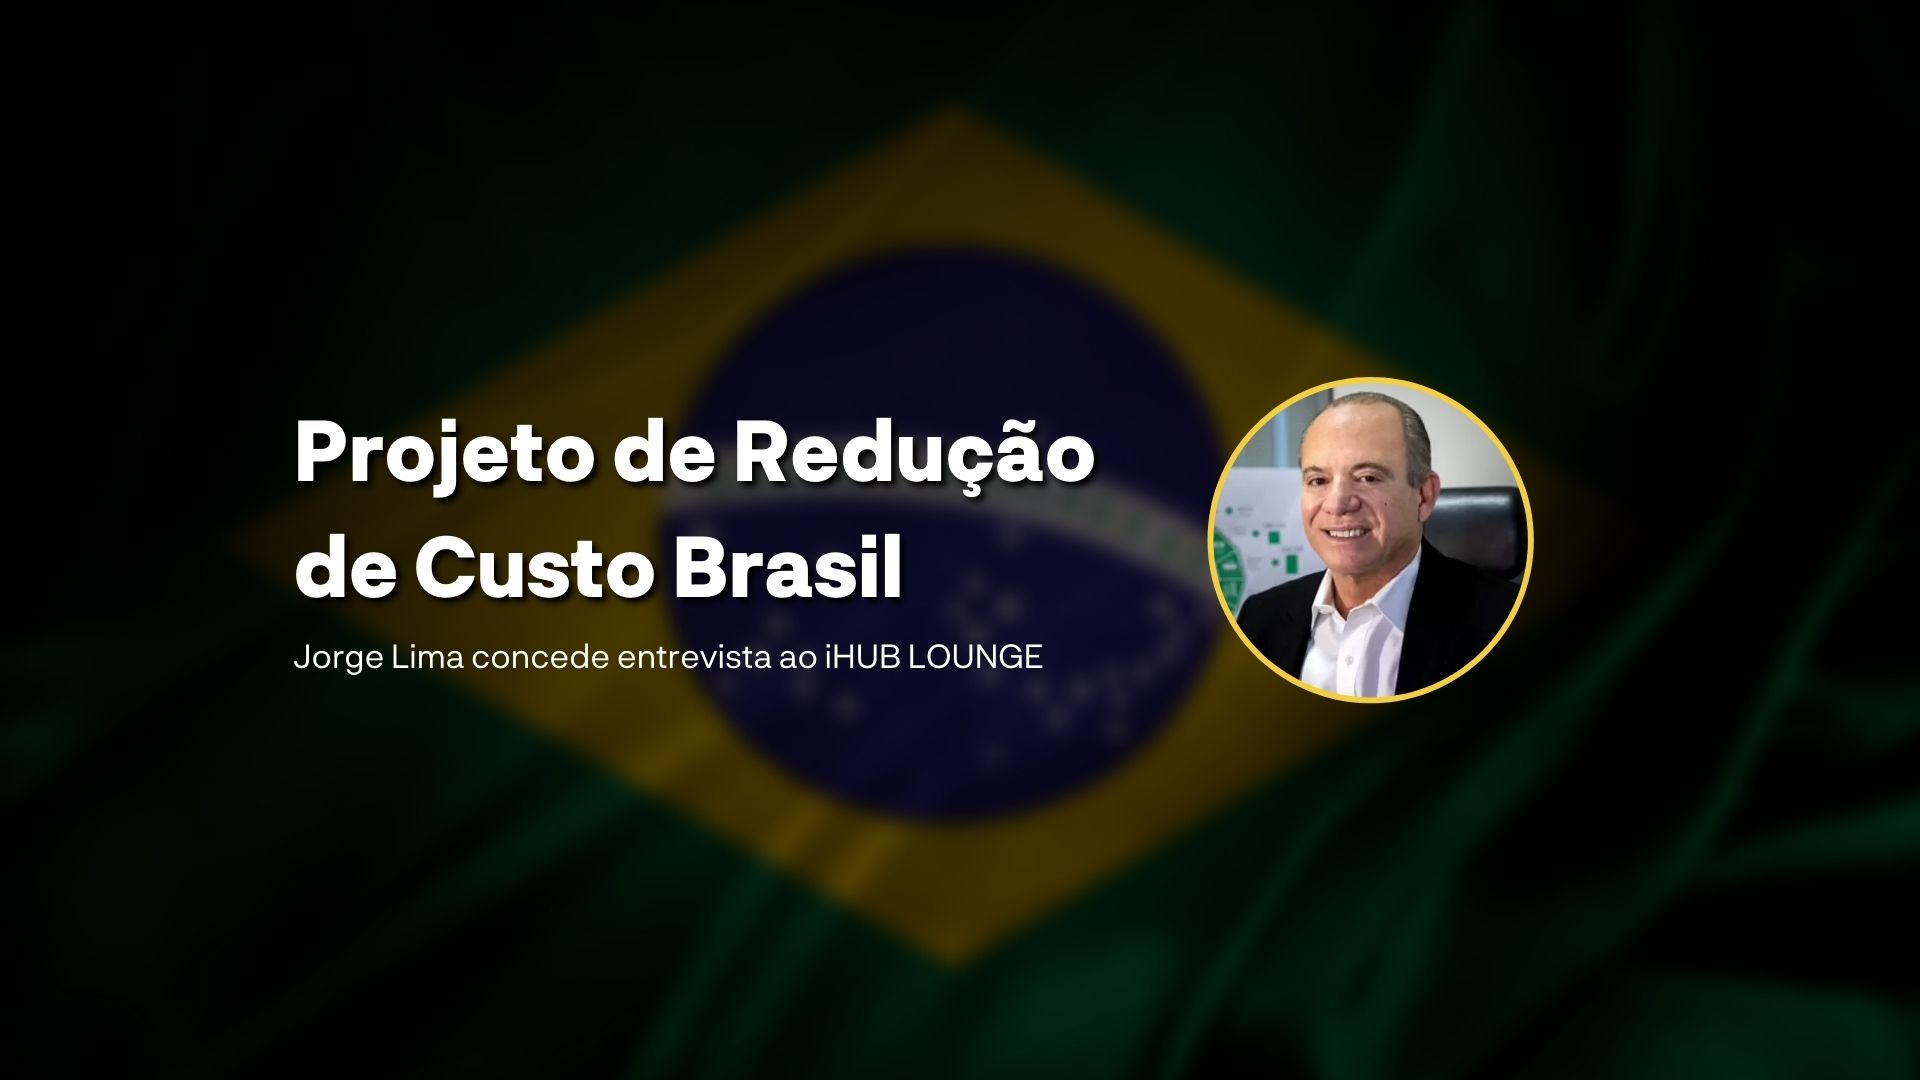 Jorge Lima, Assessor Especial do Ministério da Economia, fala sobre o projeto de Redução do Custo Brasil